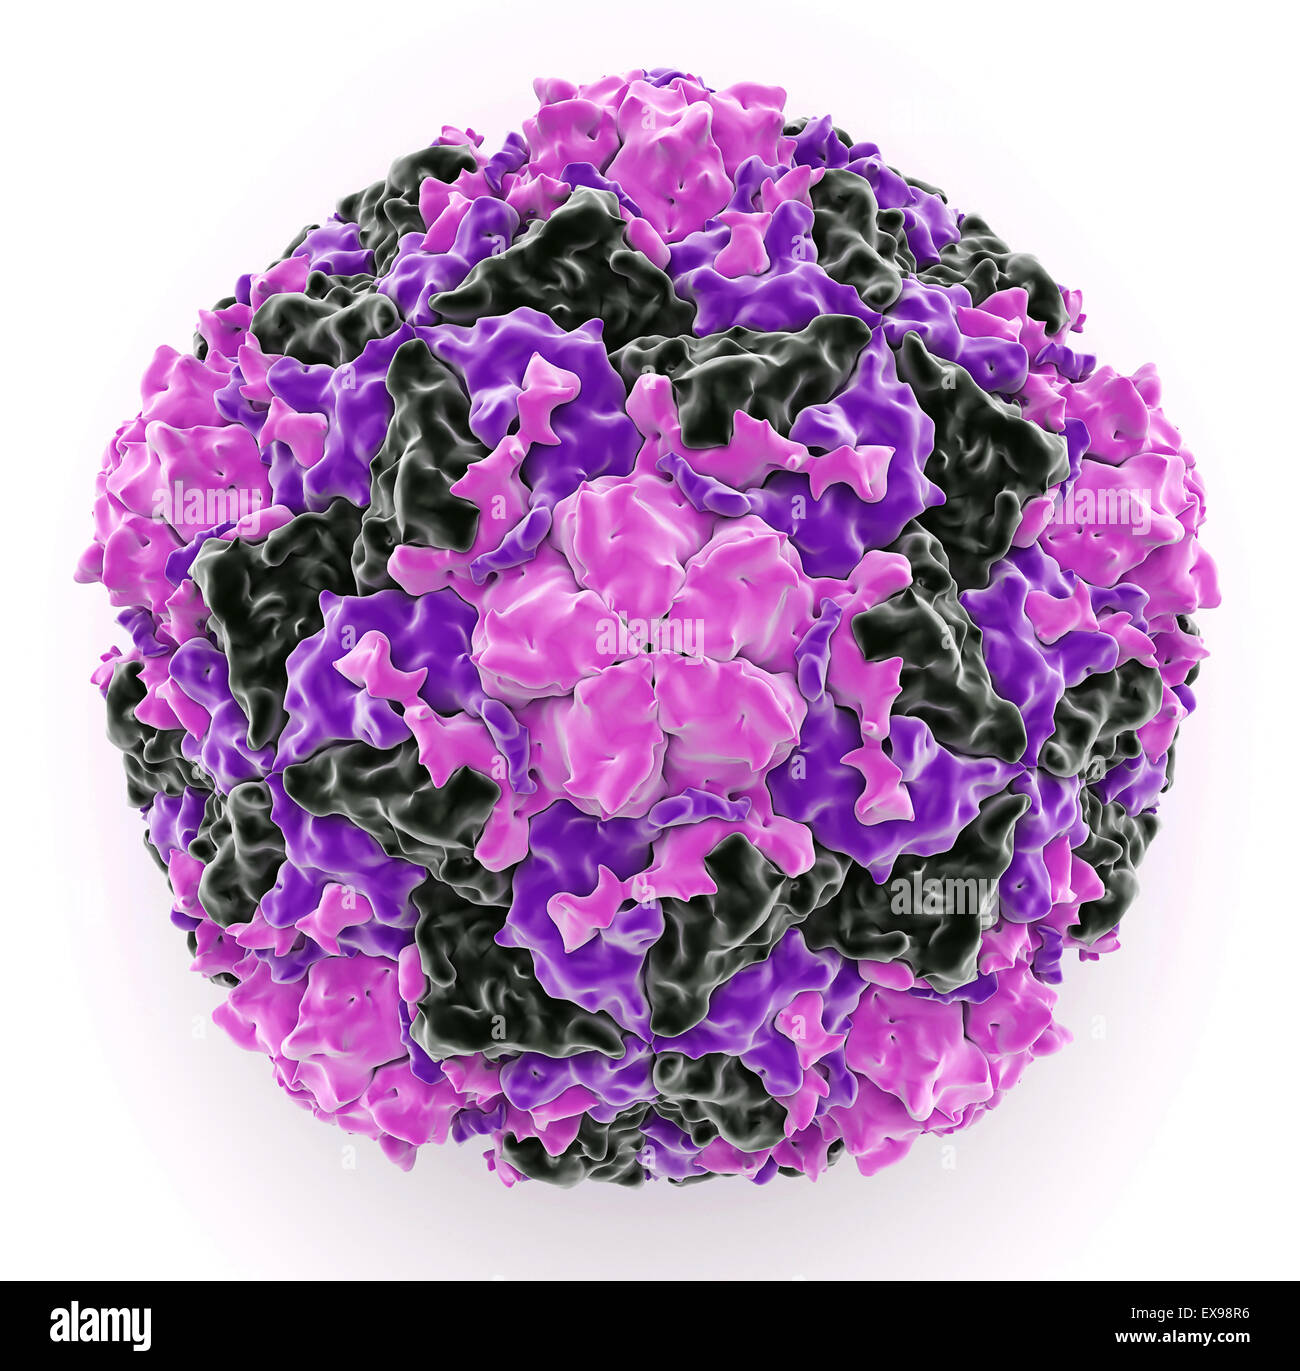 illustration of a human rhinovirus 16 coat protein. Stock Photo